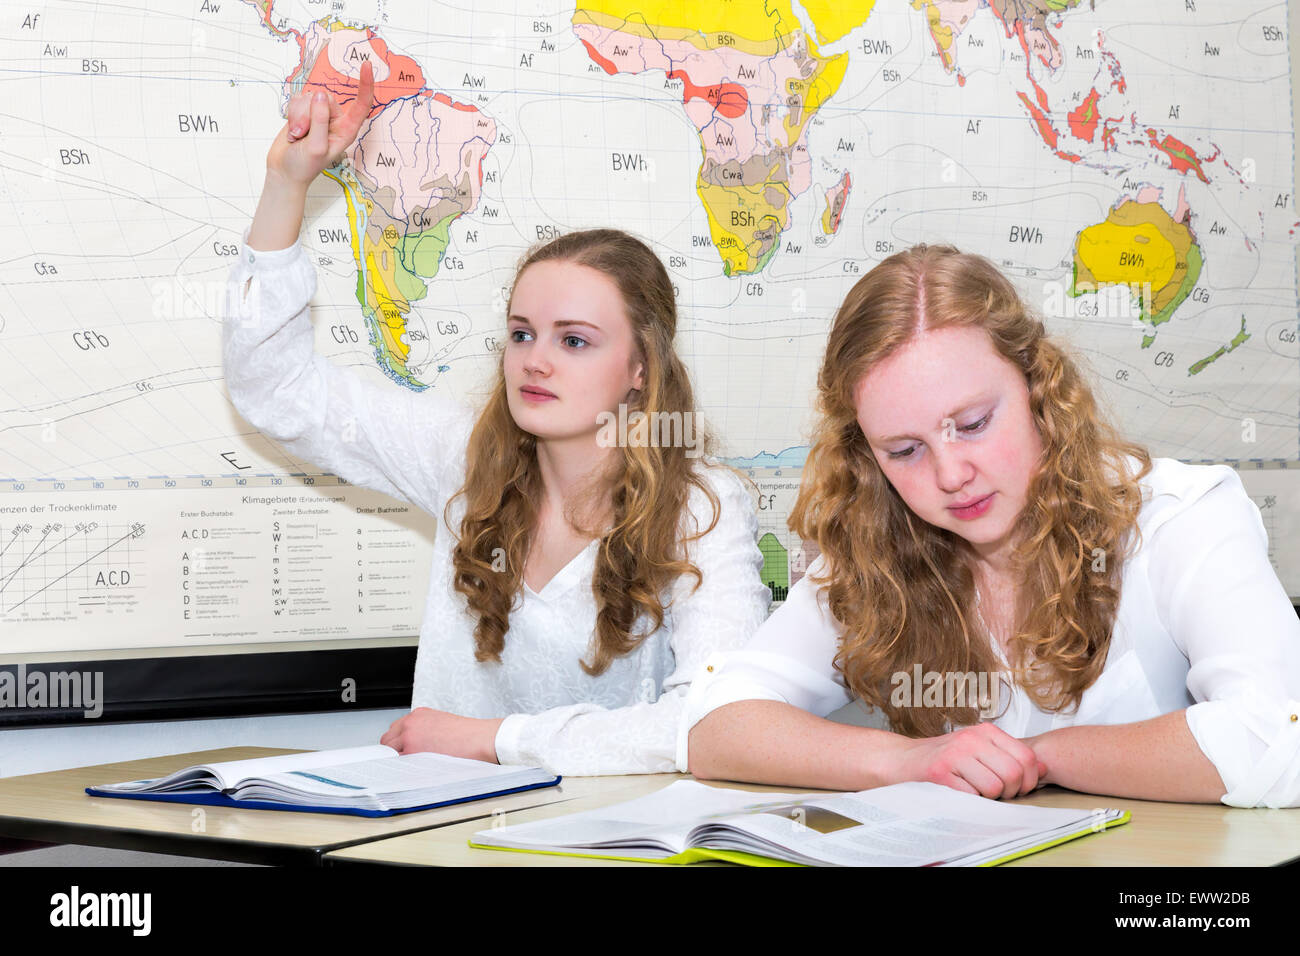 Caucasian ragazza adolescente e studente di imparare un dito nella lezione di geografia nella parte anteriore del diagramma a parete del mondo Foto Stock